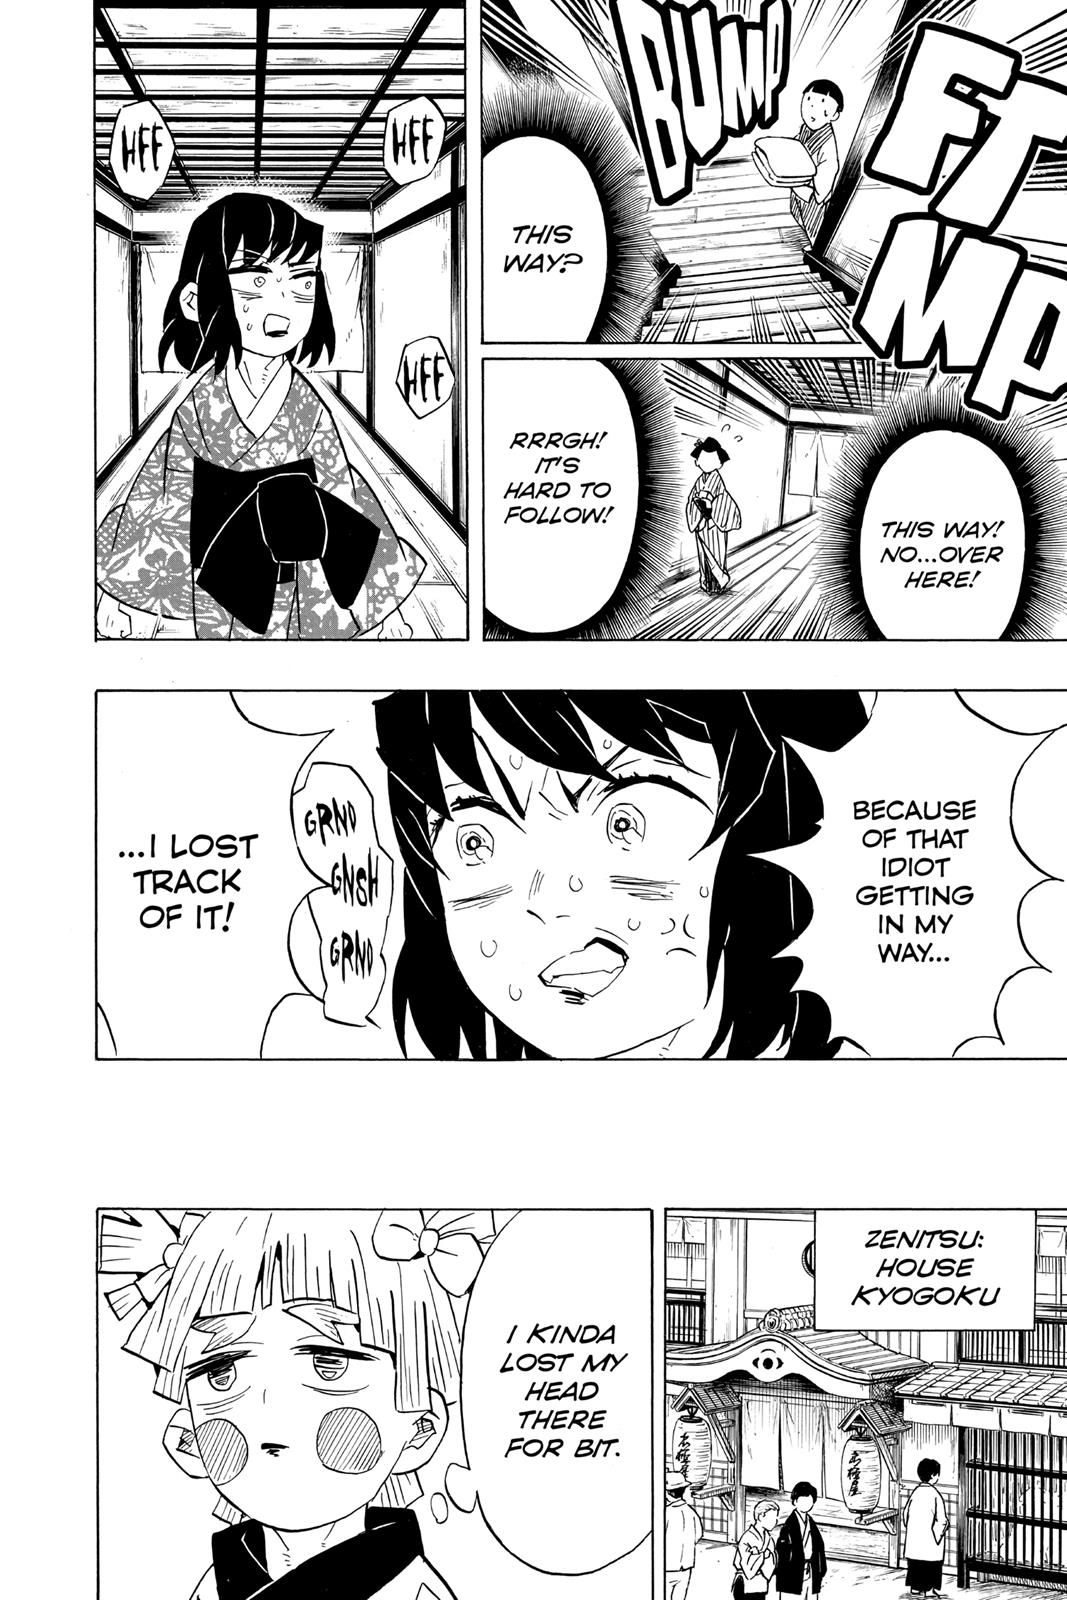 Demon Slayer Manga Manga Chapter - 73 - image 9